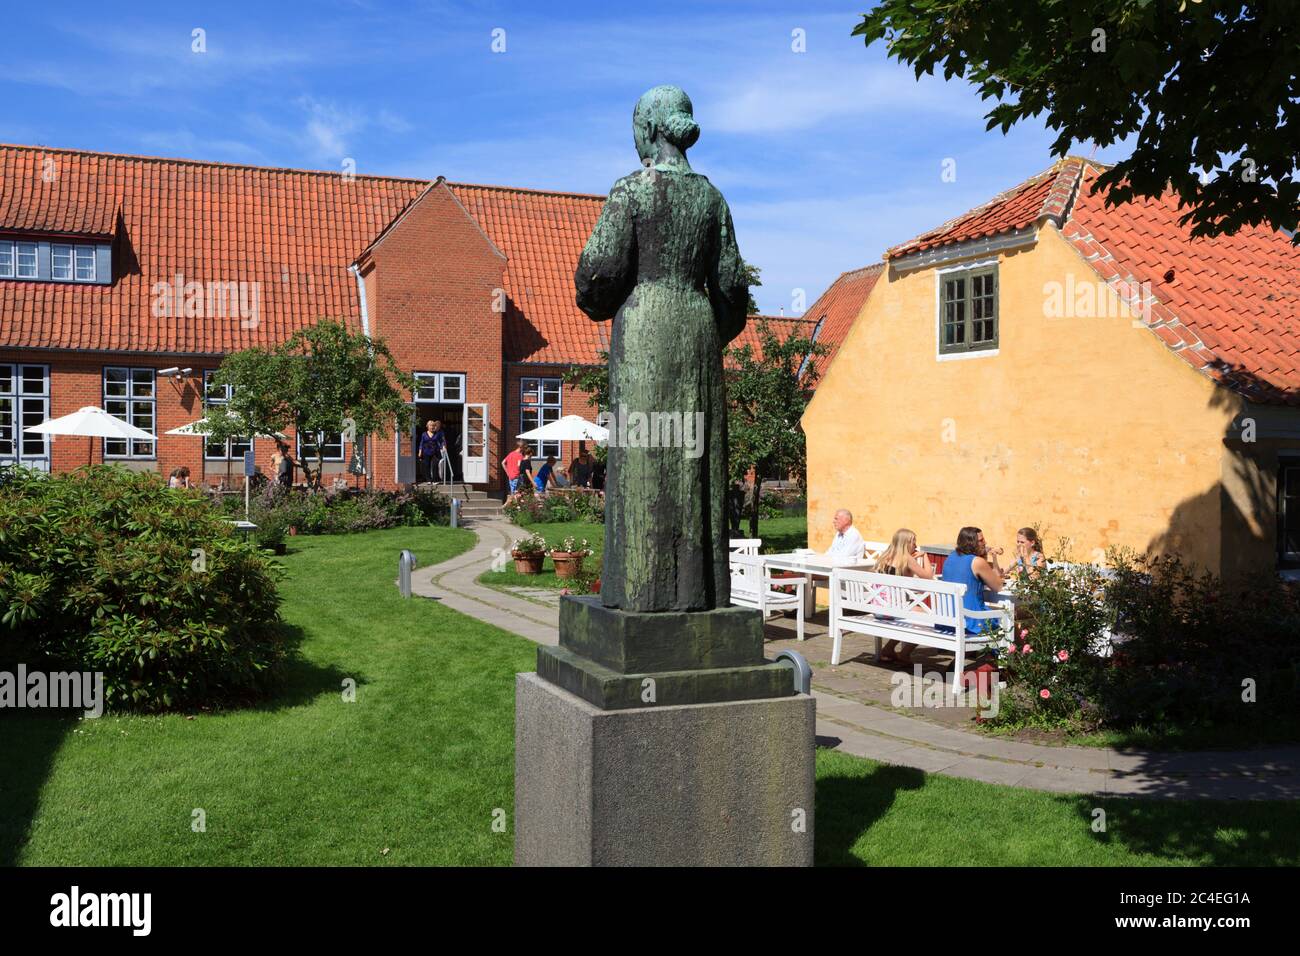 Udstyre Vælge græs Skagens museum hi-res stock photography and images - Alamy